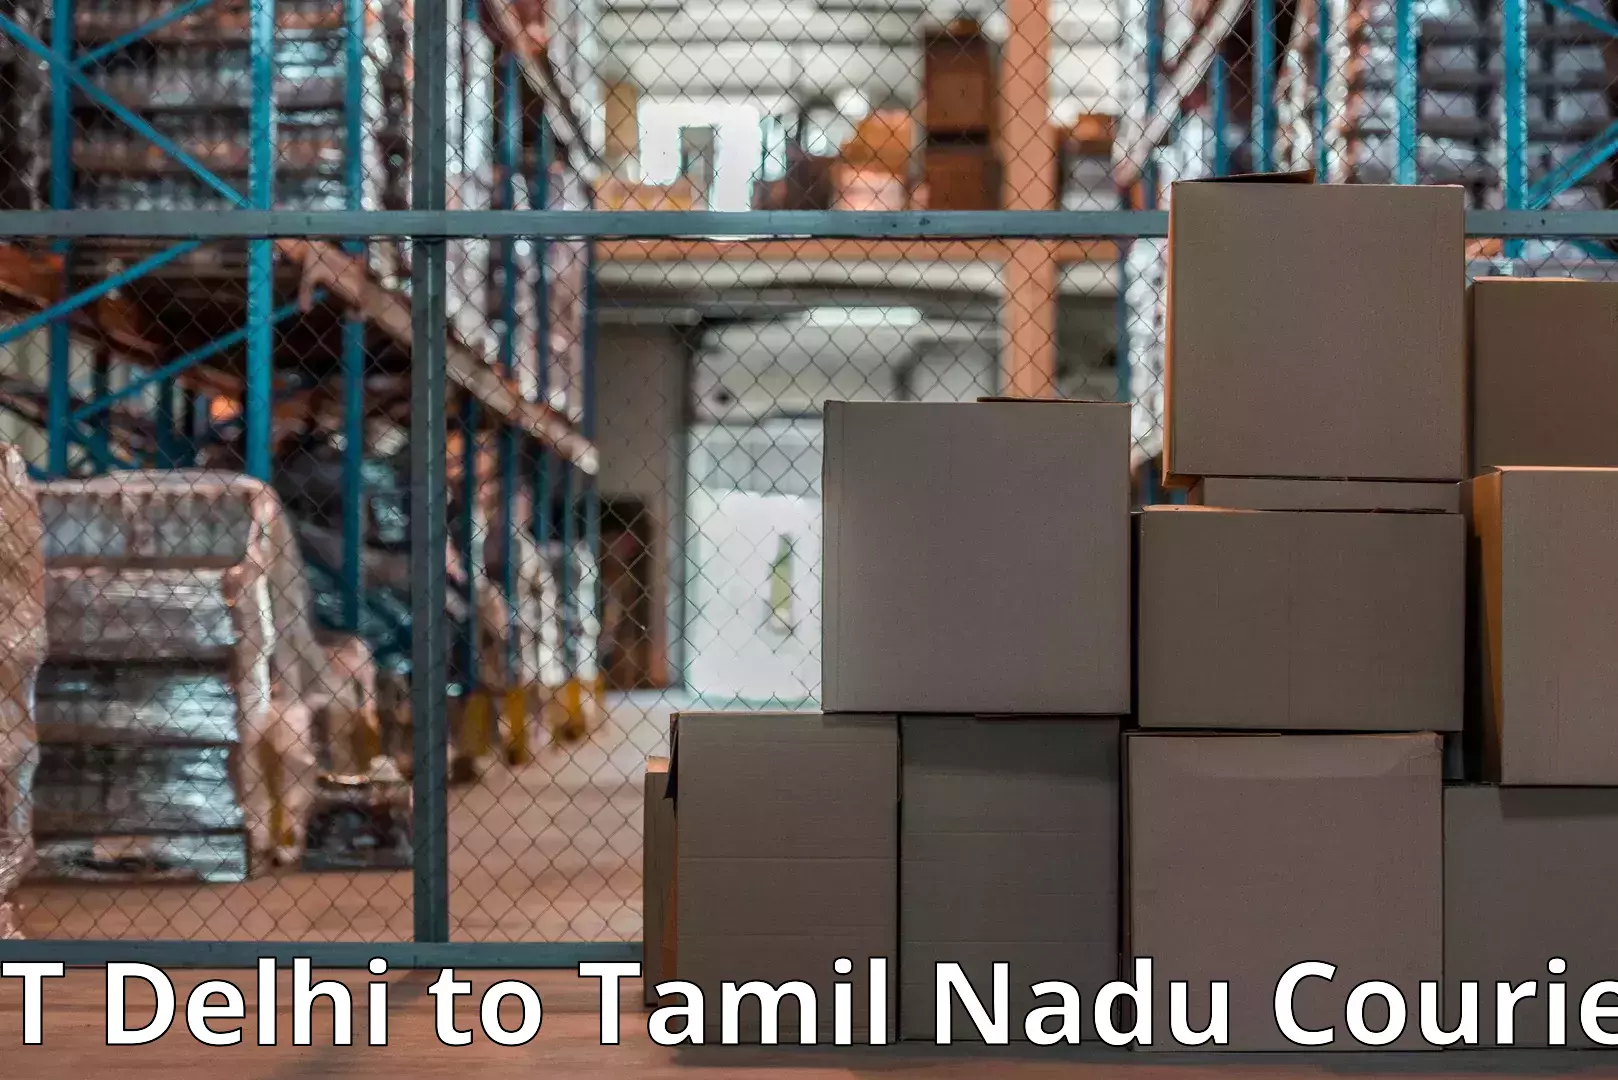 Seamless moving process IIT Delhi to Tamil Nadu